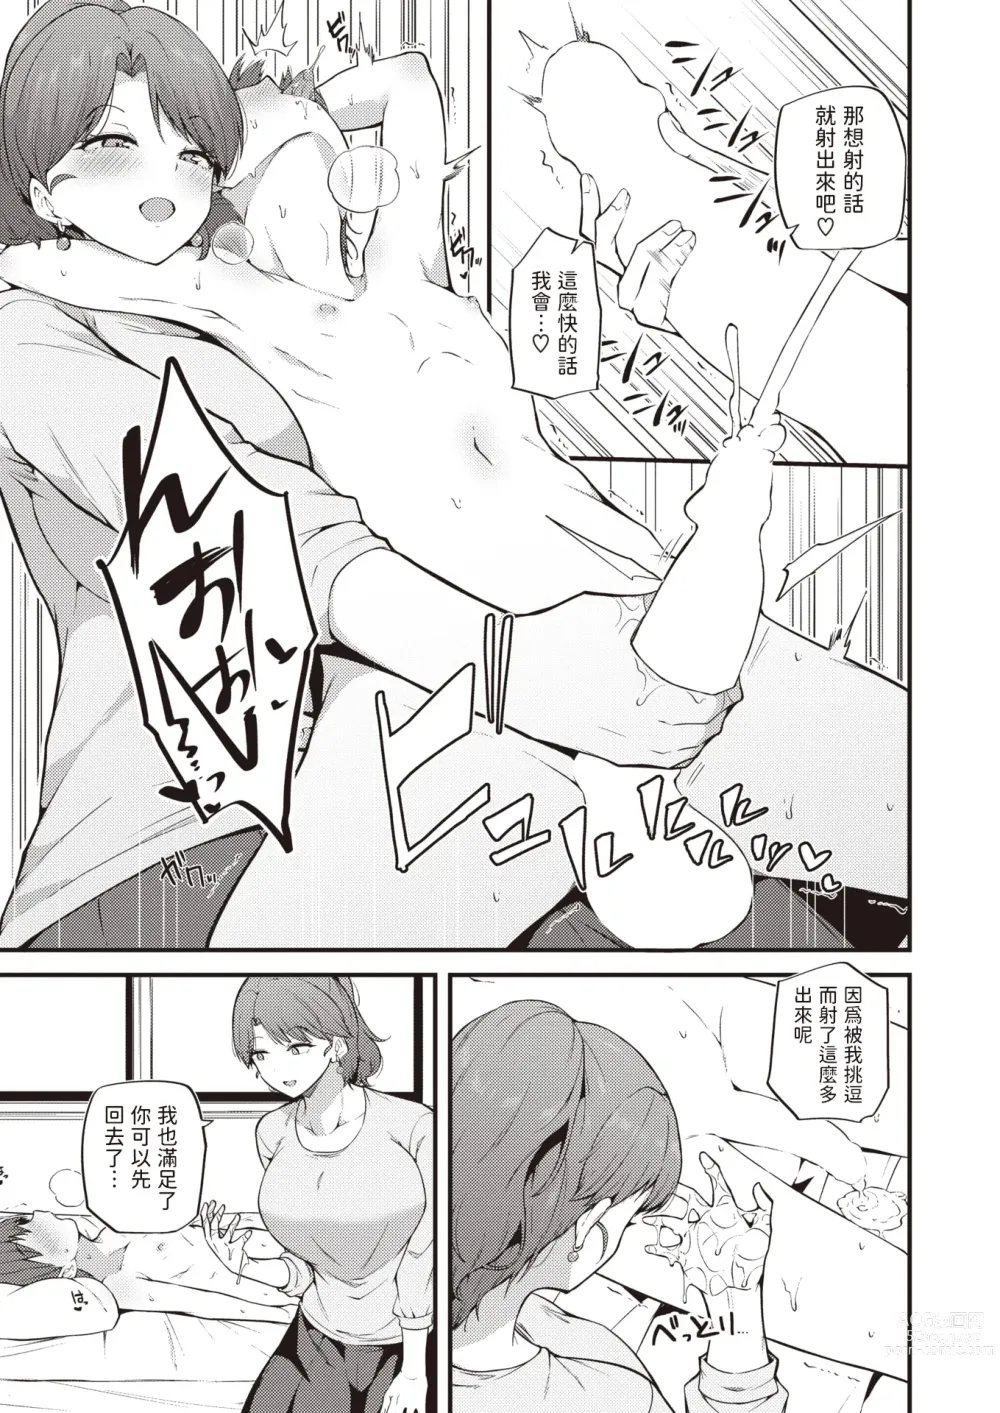 Page 9 of manga Himegoto